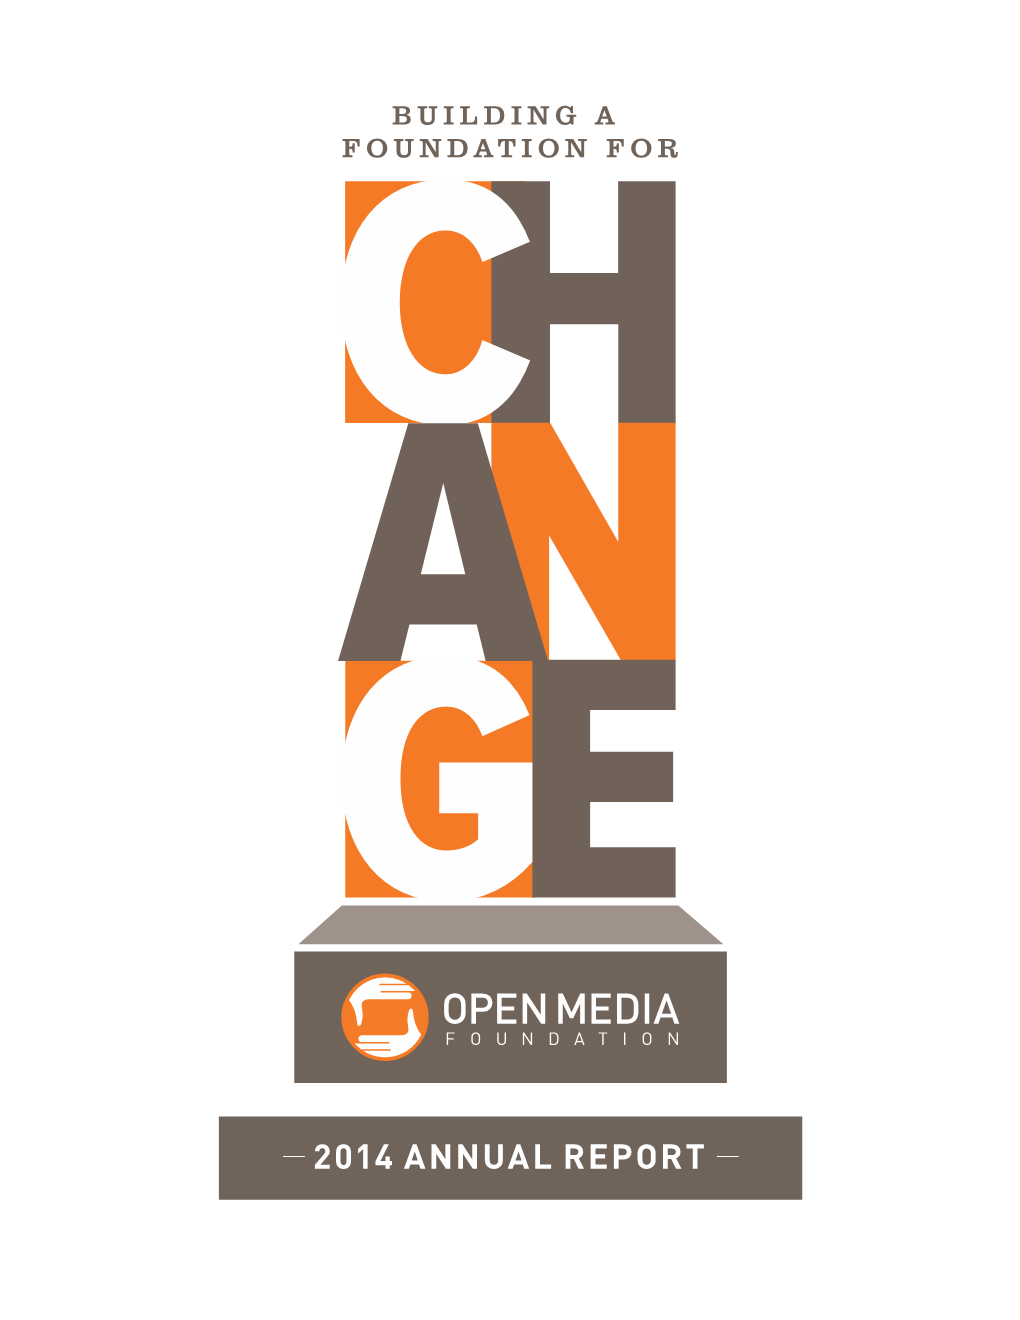 2014 Annual Report (PDF)